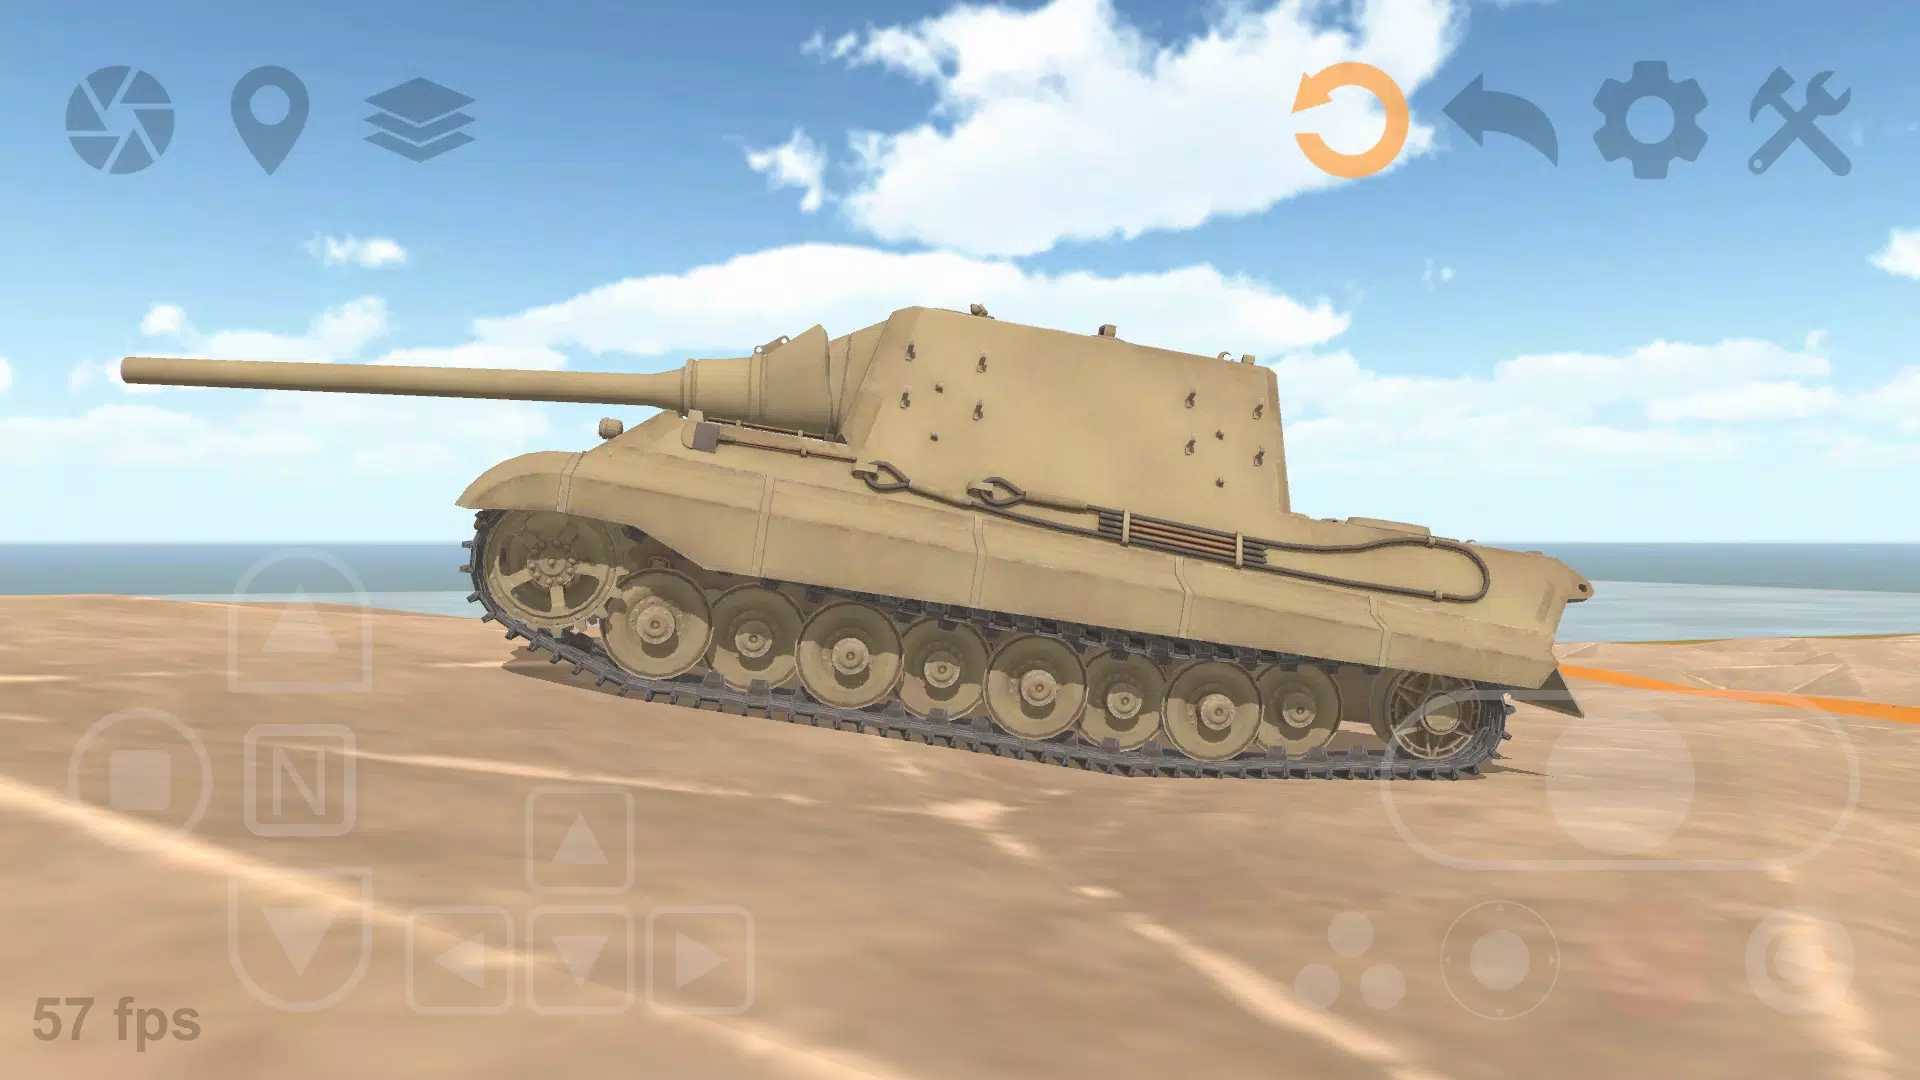 坦克物理模拟器3免广告版